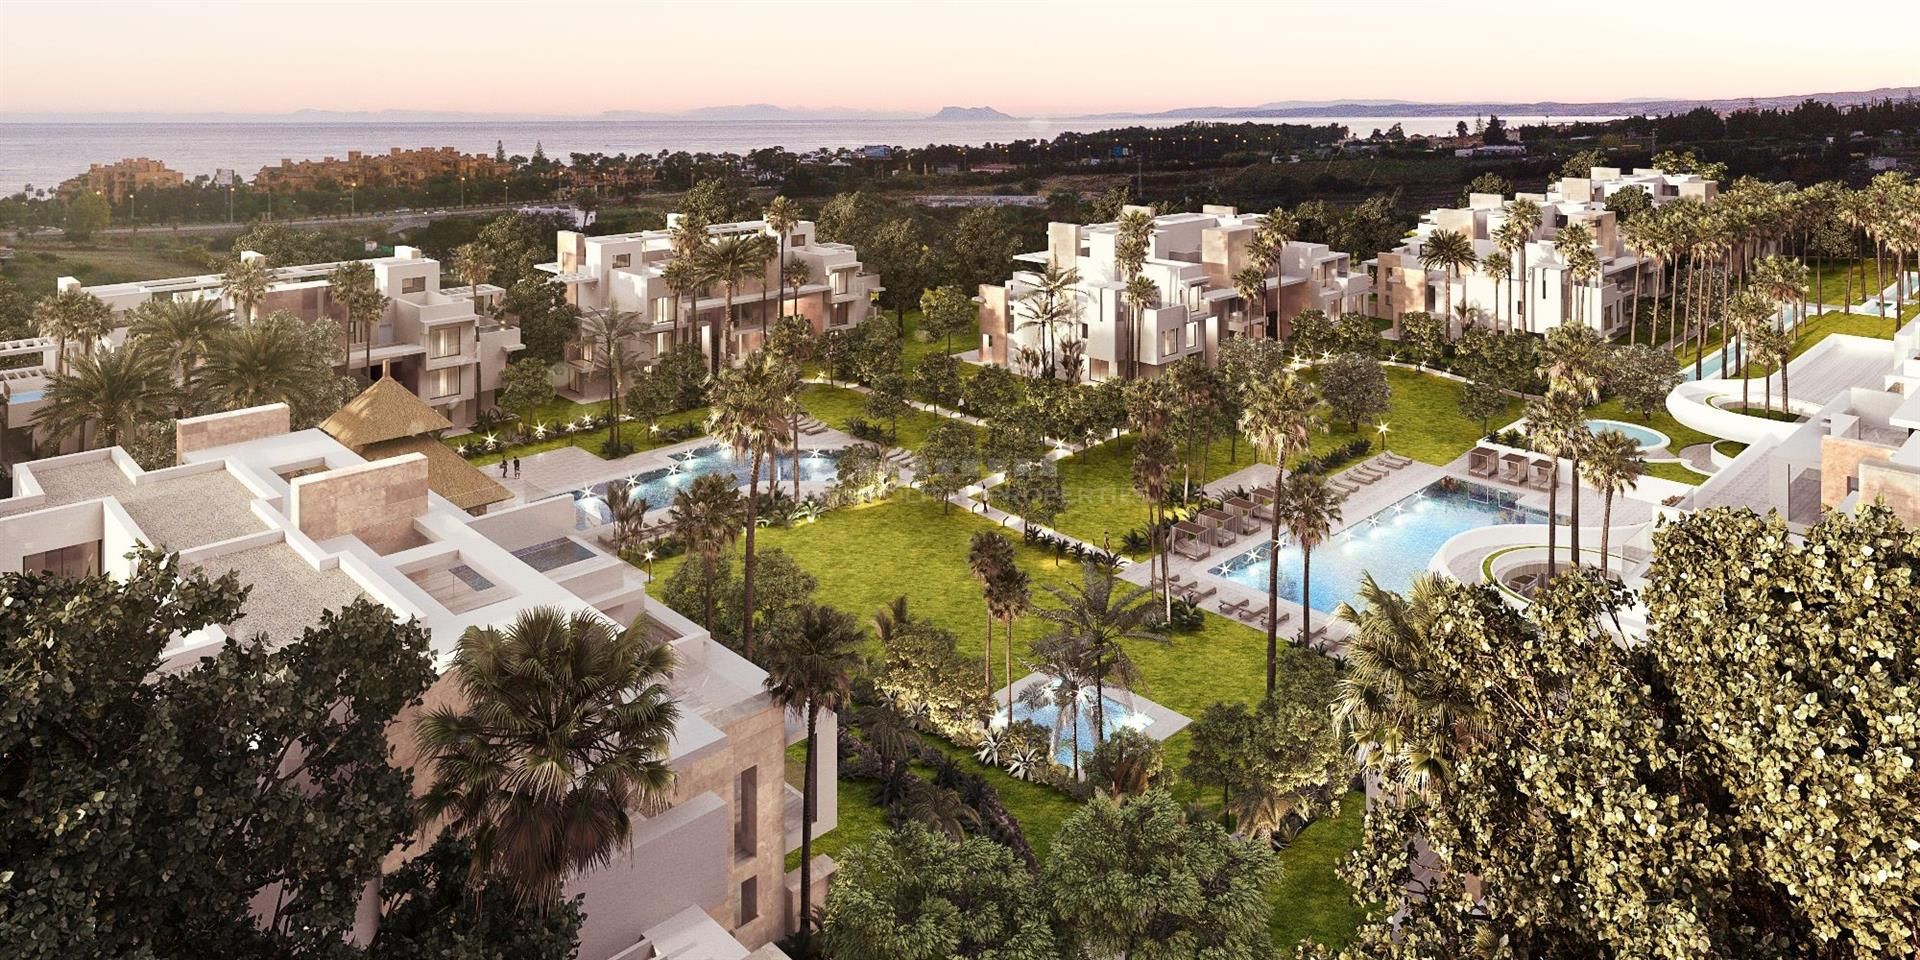 Ayana trae un concepto único en el desarrollo de resorts a la Costa del Sol.